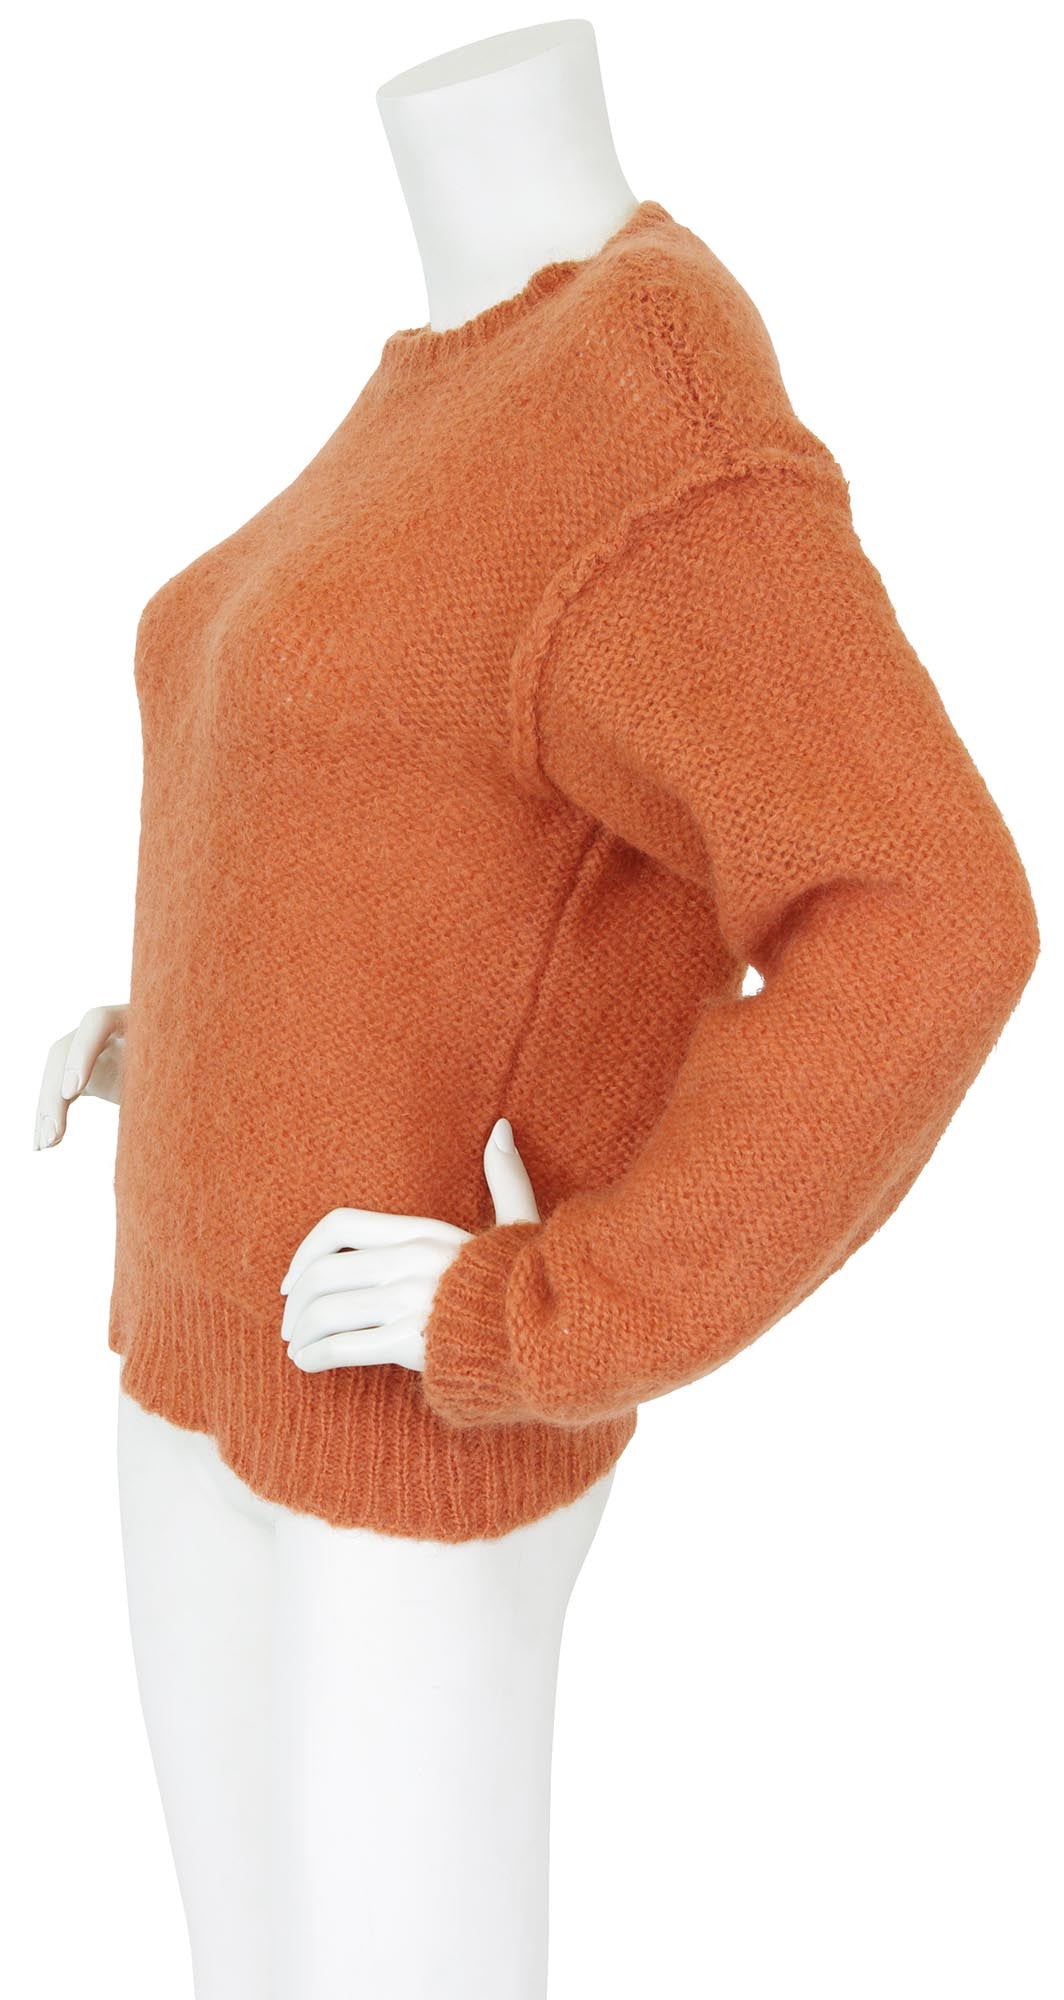 1970s Tuscan Orange Loose Knit Wool Sweater